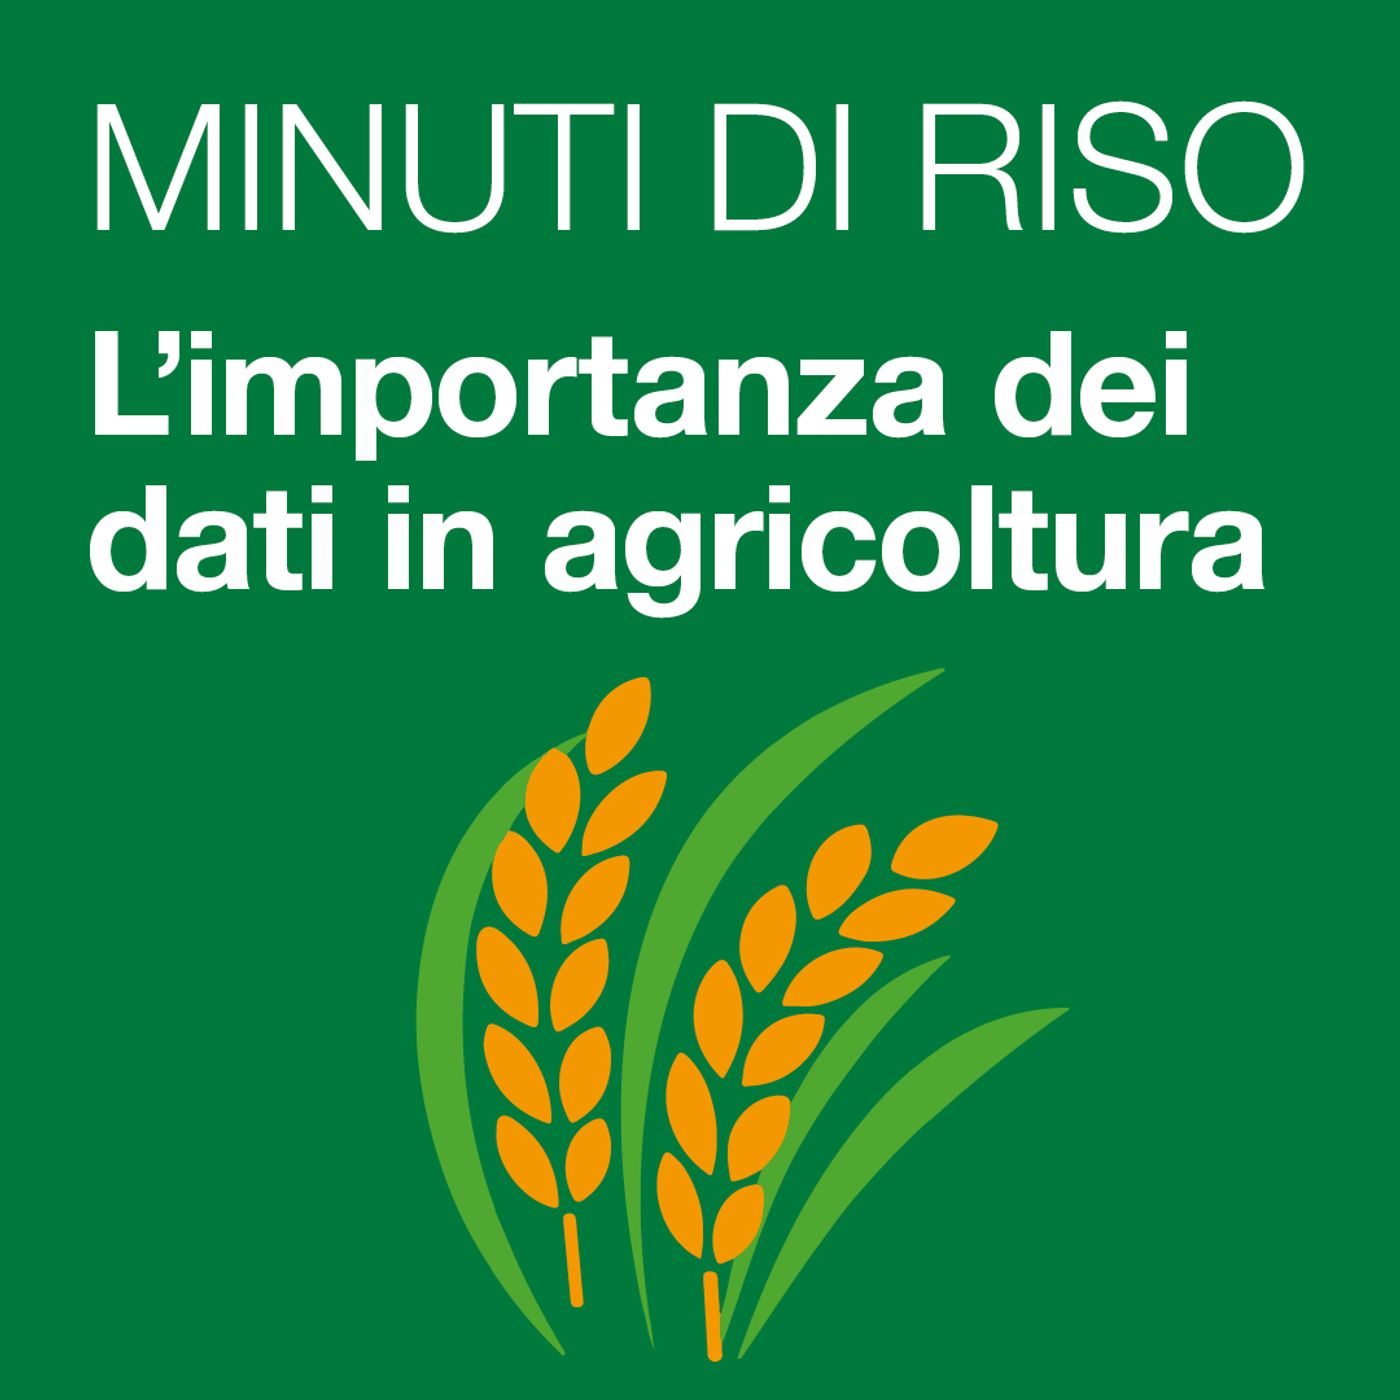 12 - L'importanza dei dati in agricoltura